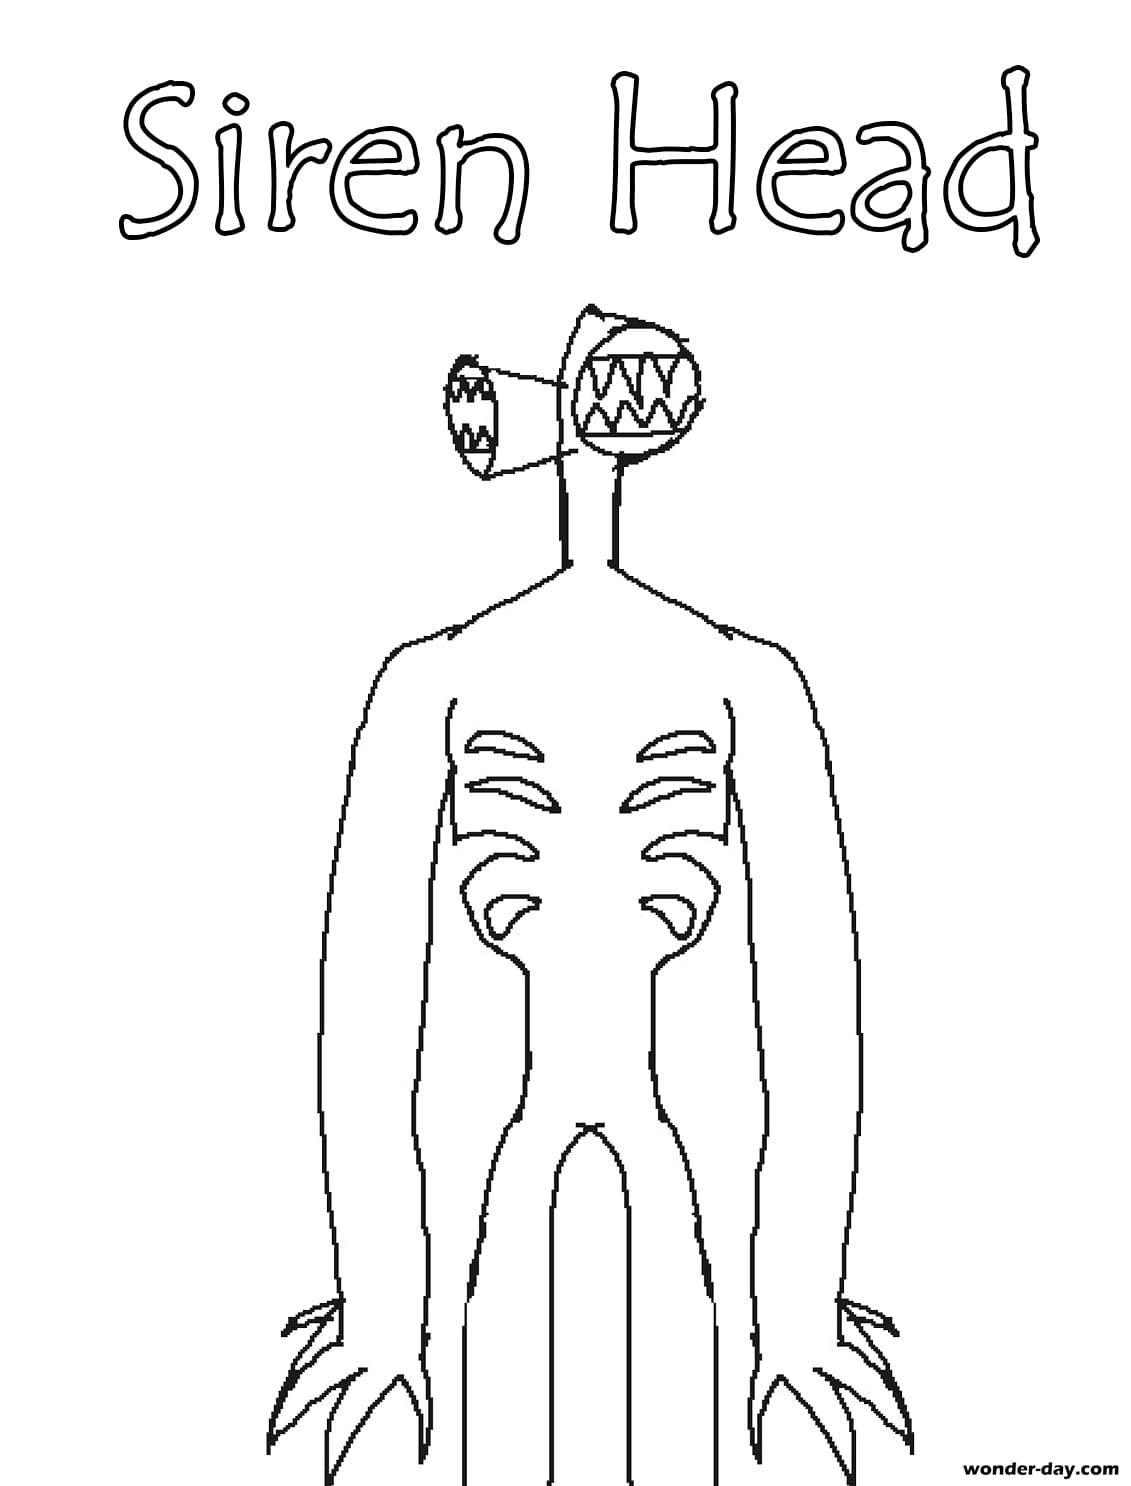 Desenhos de Siren Head para colorir. Imprima gratuitamente